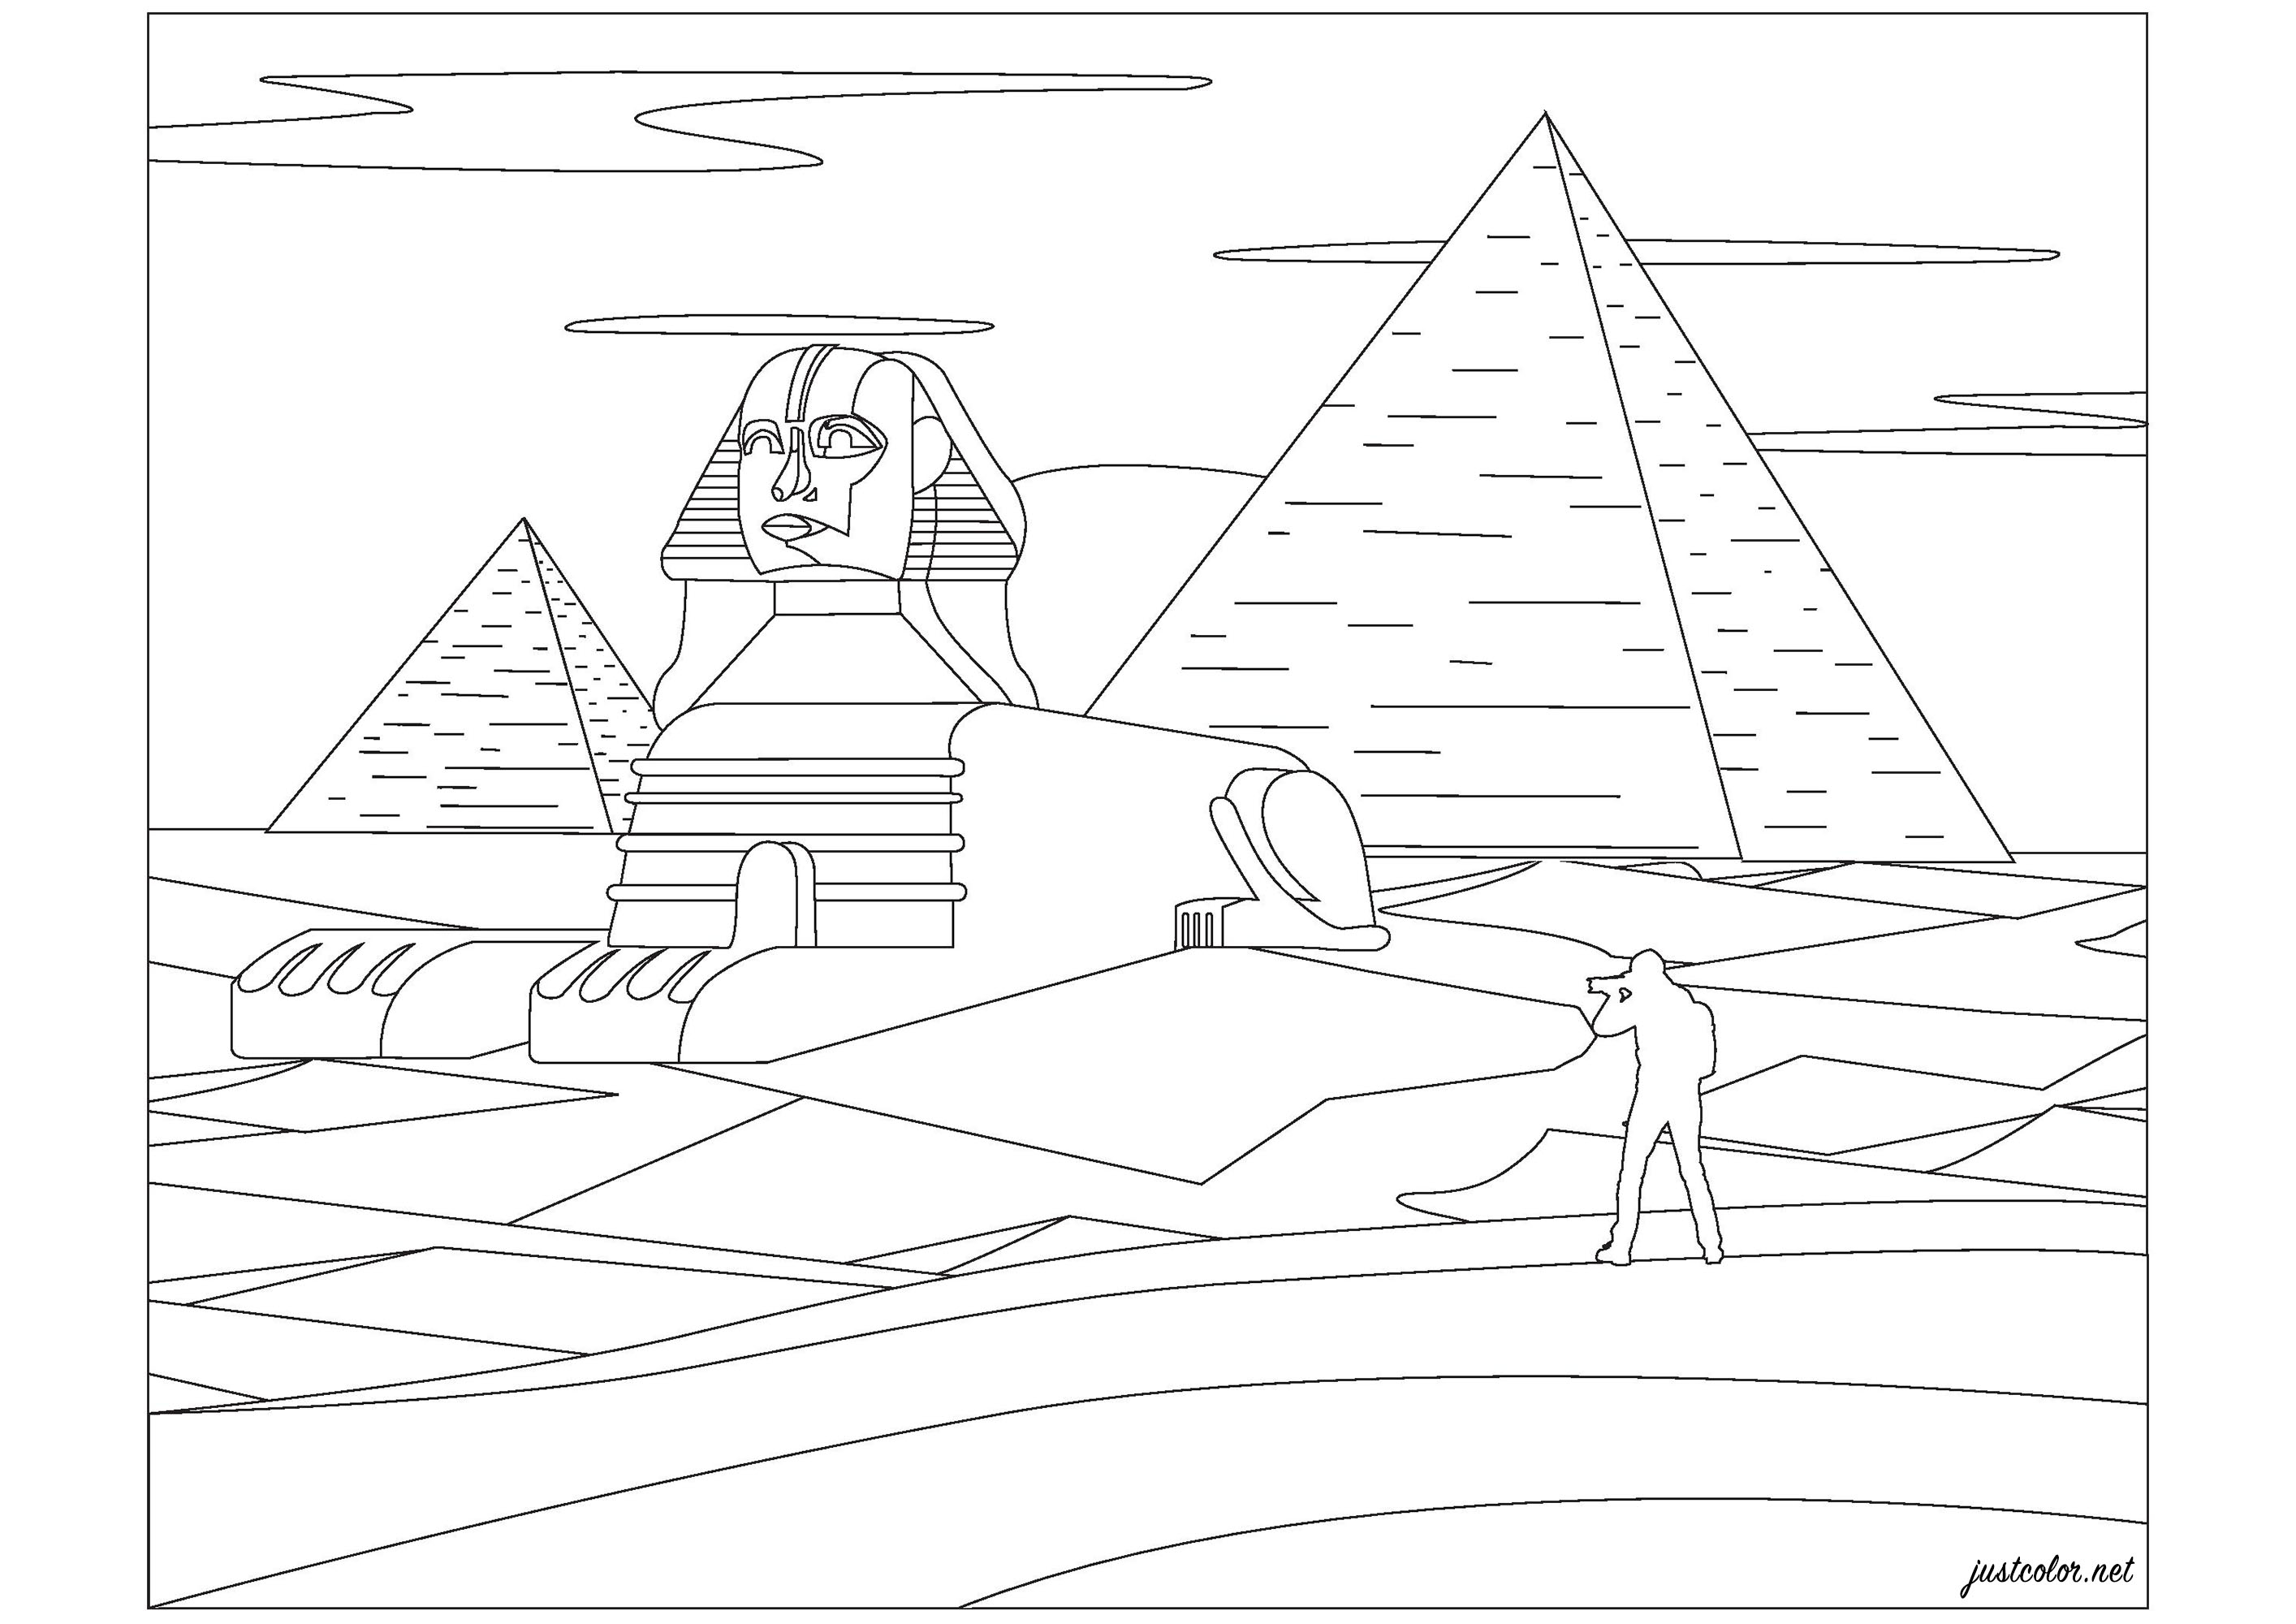 Piramidi di Giza e Sfinge, in Egitto. Le piramidi di Giza furono costruite 4.500 anni fa durante la quarta dinastia, l'età d'oro dell'Egitto. Anche il modo in cui queste piramidi furono costruite è fonte di speculazioni e dibattiti. Molti ricercatori ritengono che per spostare i blocchi in posizione durante la costruzione sia stato utilizzato un sistema di rampe di qualche tipo. Quando furono completate, le piramidi erano interamente o parzialmente ricoperte di calcare bianco, la maggior parte del quale oggi è andato perduto. Con una lunghezza di 73 metri e un'altezza di 20 metri, la Grande Sfinge è una gigantesca statua di calcare risalente a 4.500 anni fa.